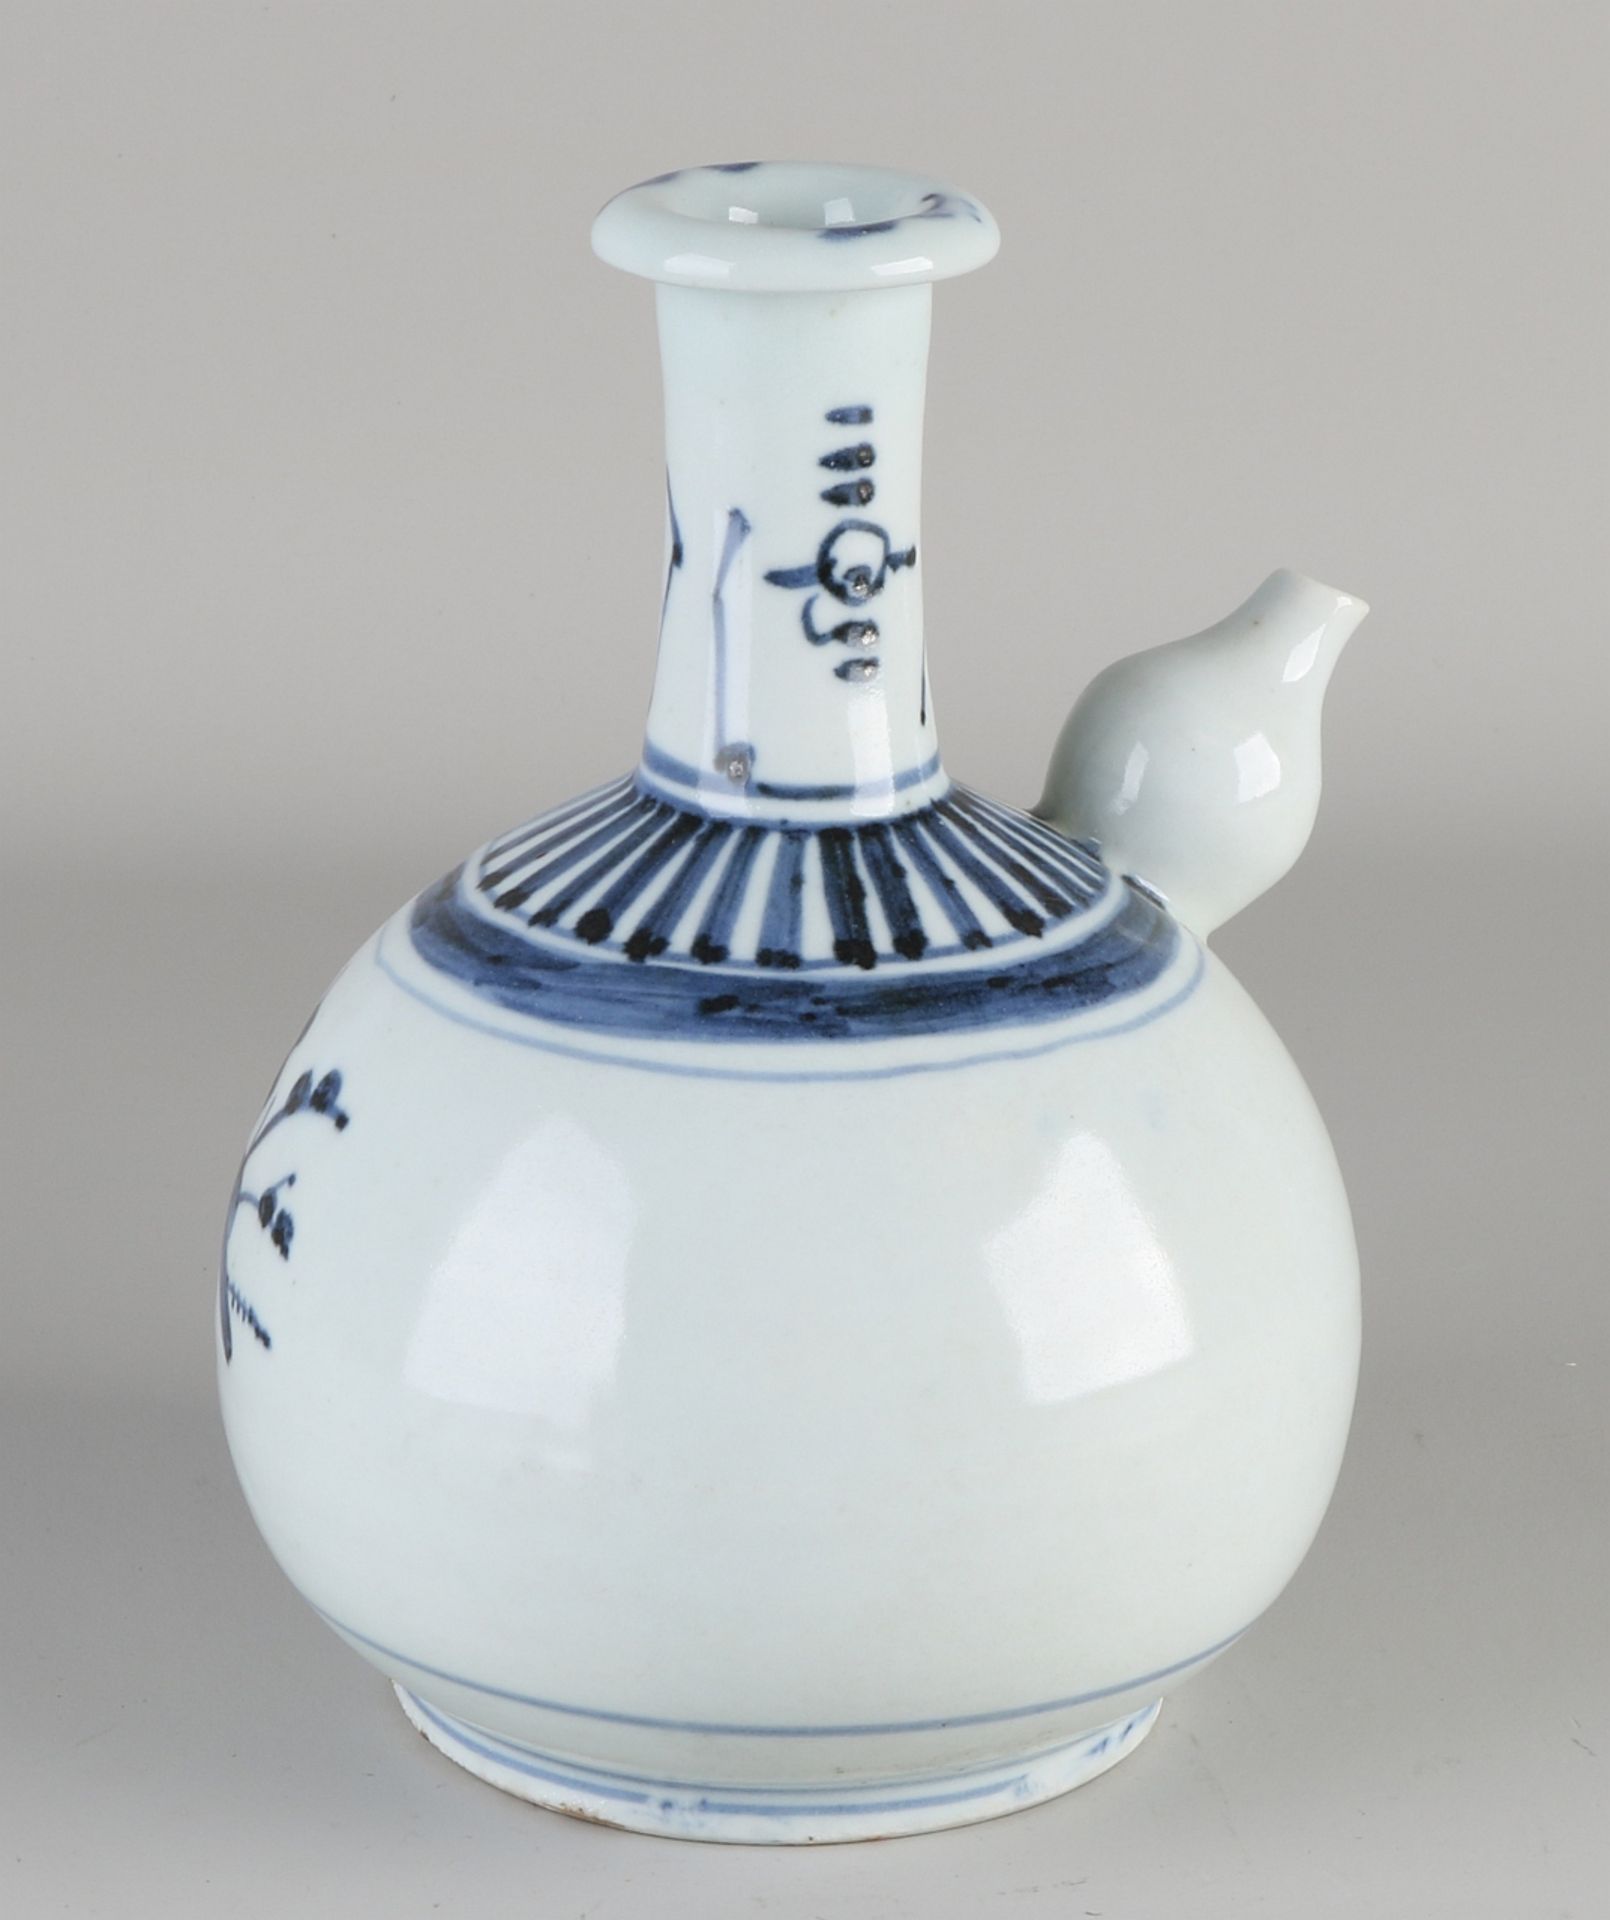 Ghendi Krug aus japanischem Porzellan mit Blumendekor. Abmessungen: H 22 cm. In guter Kondition.J - Bild 2 aus 3